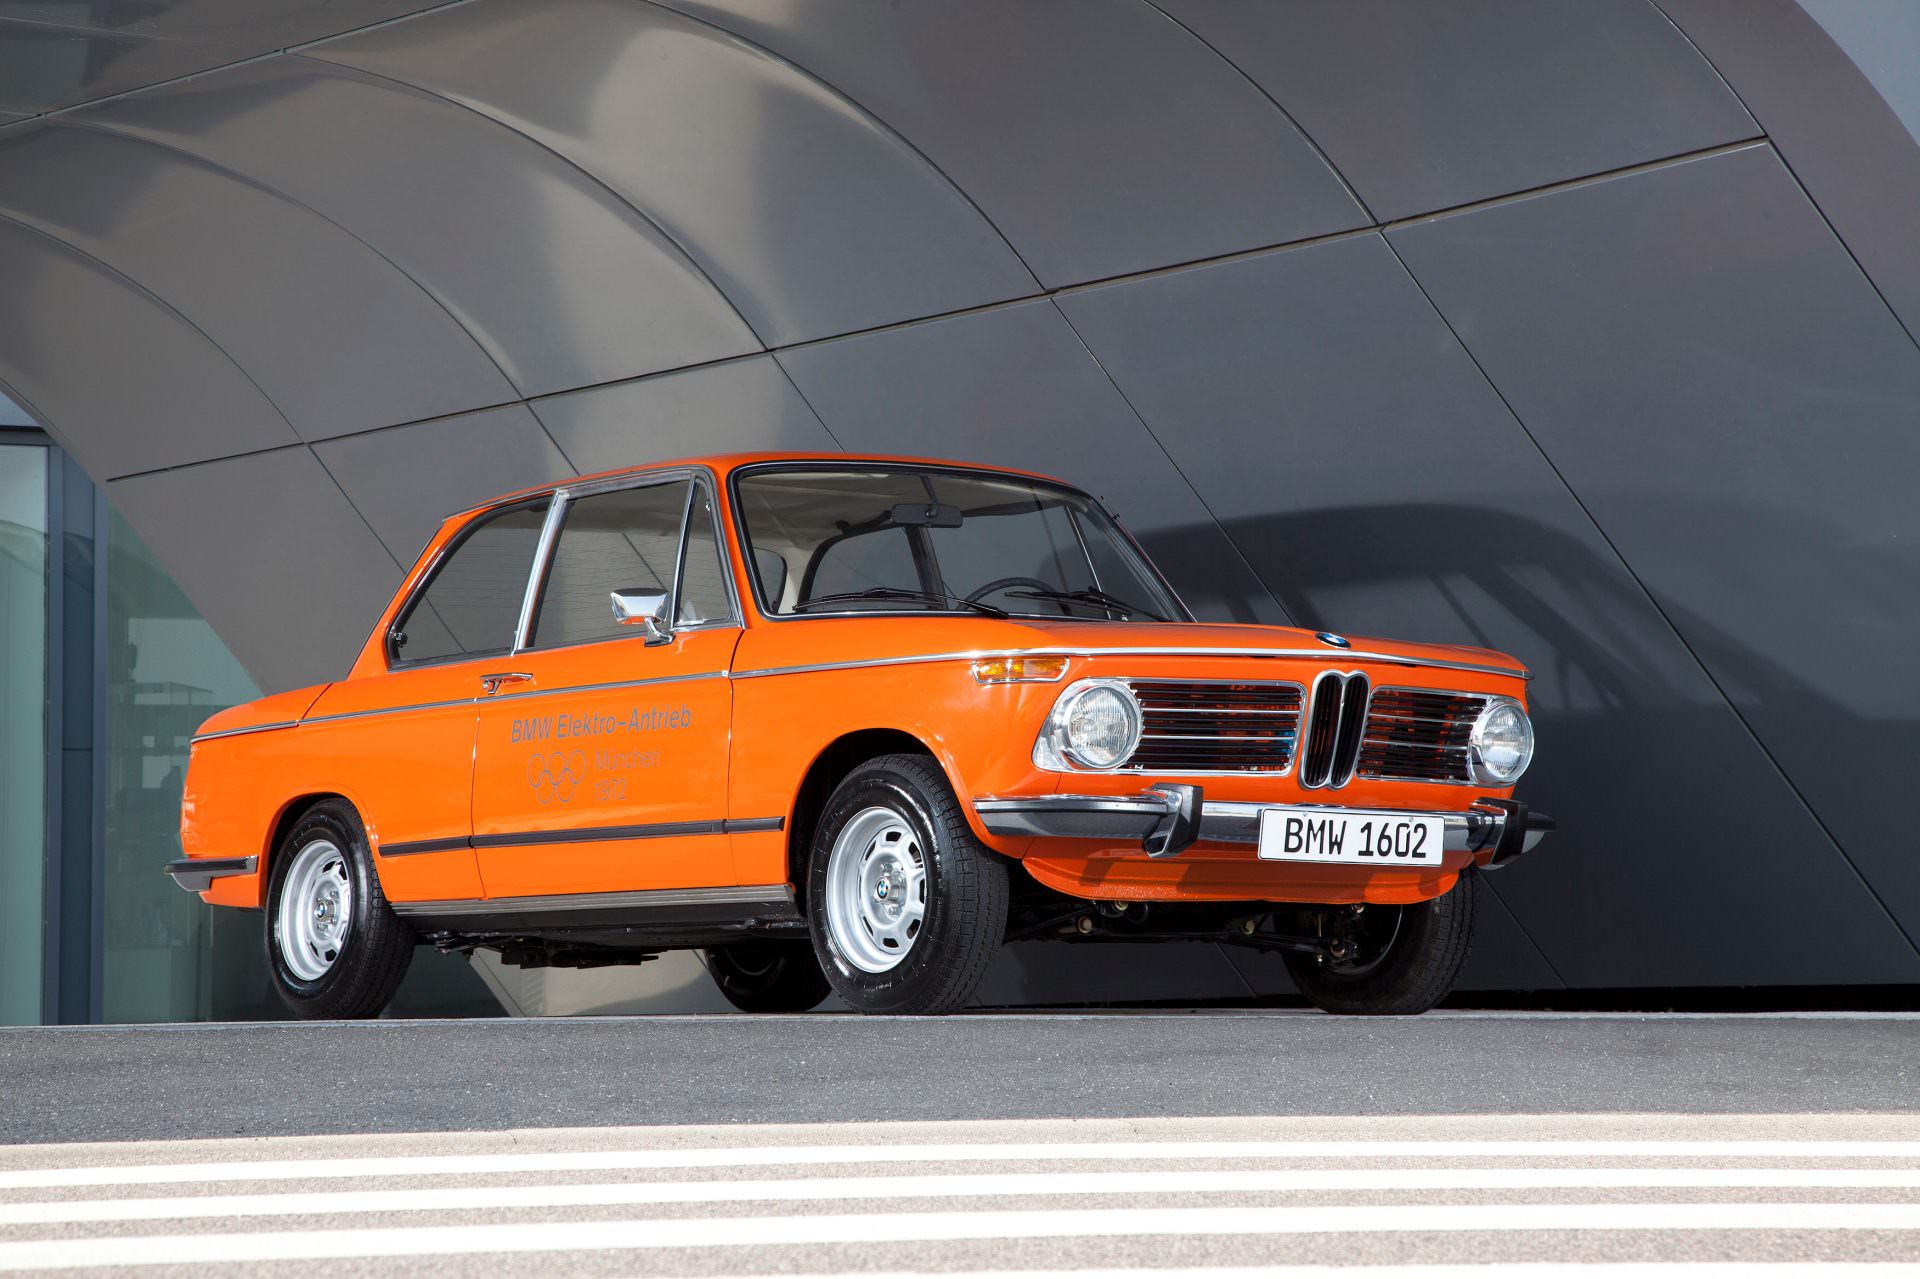 Pomarańczowy pojazd elektryczny BMW 1602 z 1972 r. eksponowany jest w nowoczesnej scenerii z zaokrąglonymi białymi ścianami. Samochód ma klasyczną, pudełkowatą konstrukcję, typową dla sedanów z lat 70. XX wieku, z okrągłymi reflektorami i charakterystyczną atrapą chłodnicy BMW.